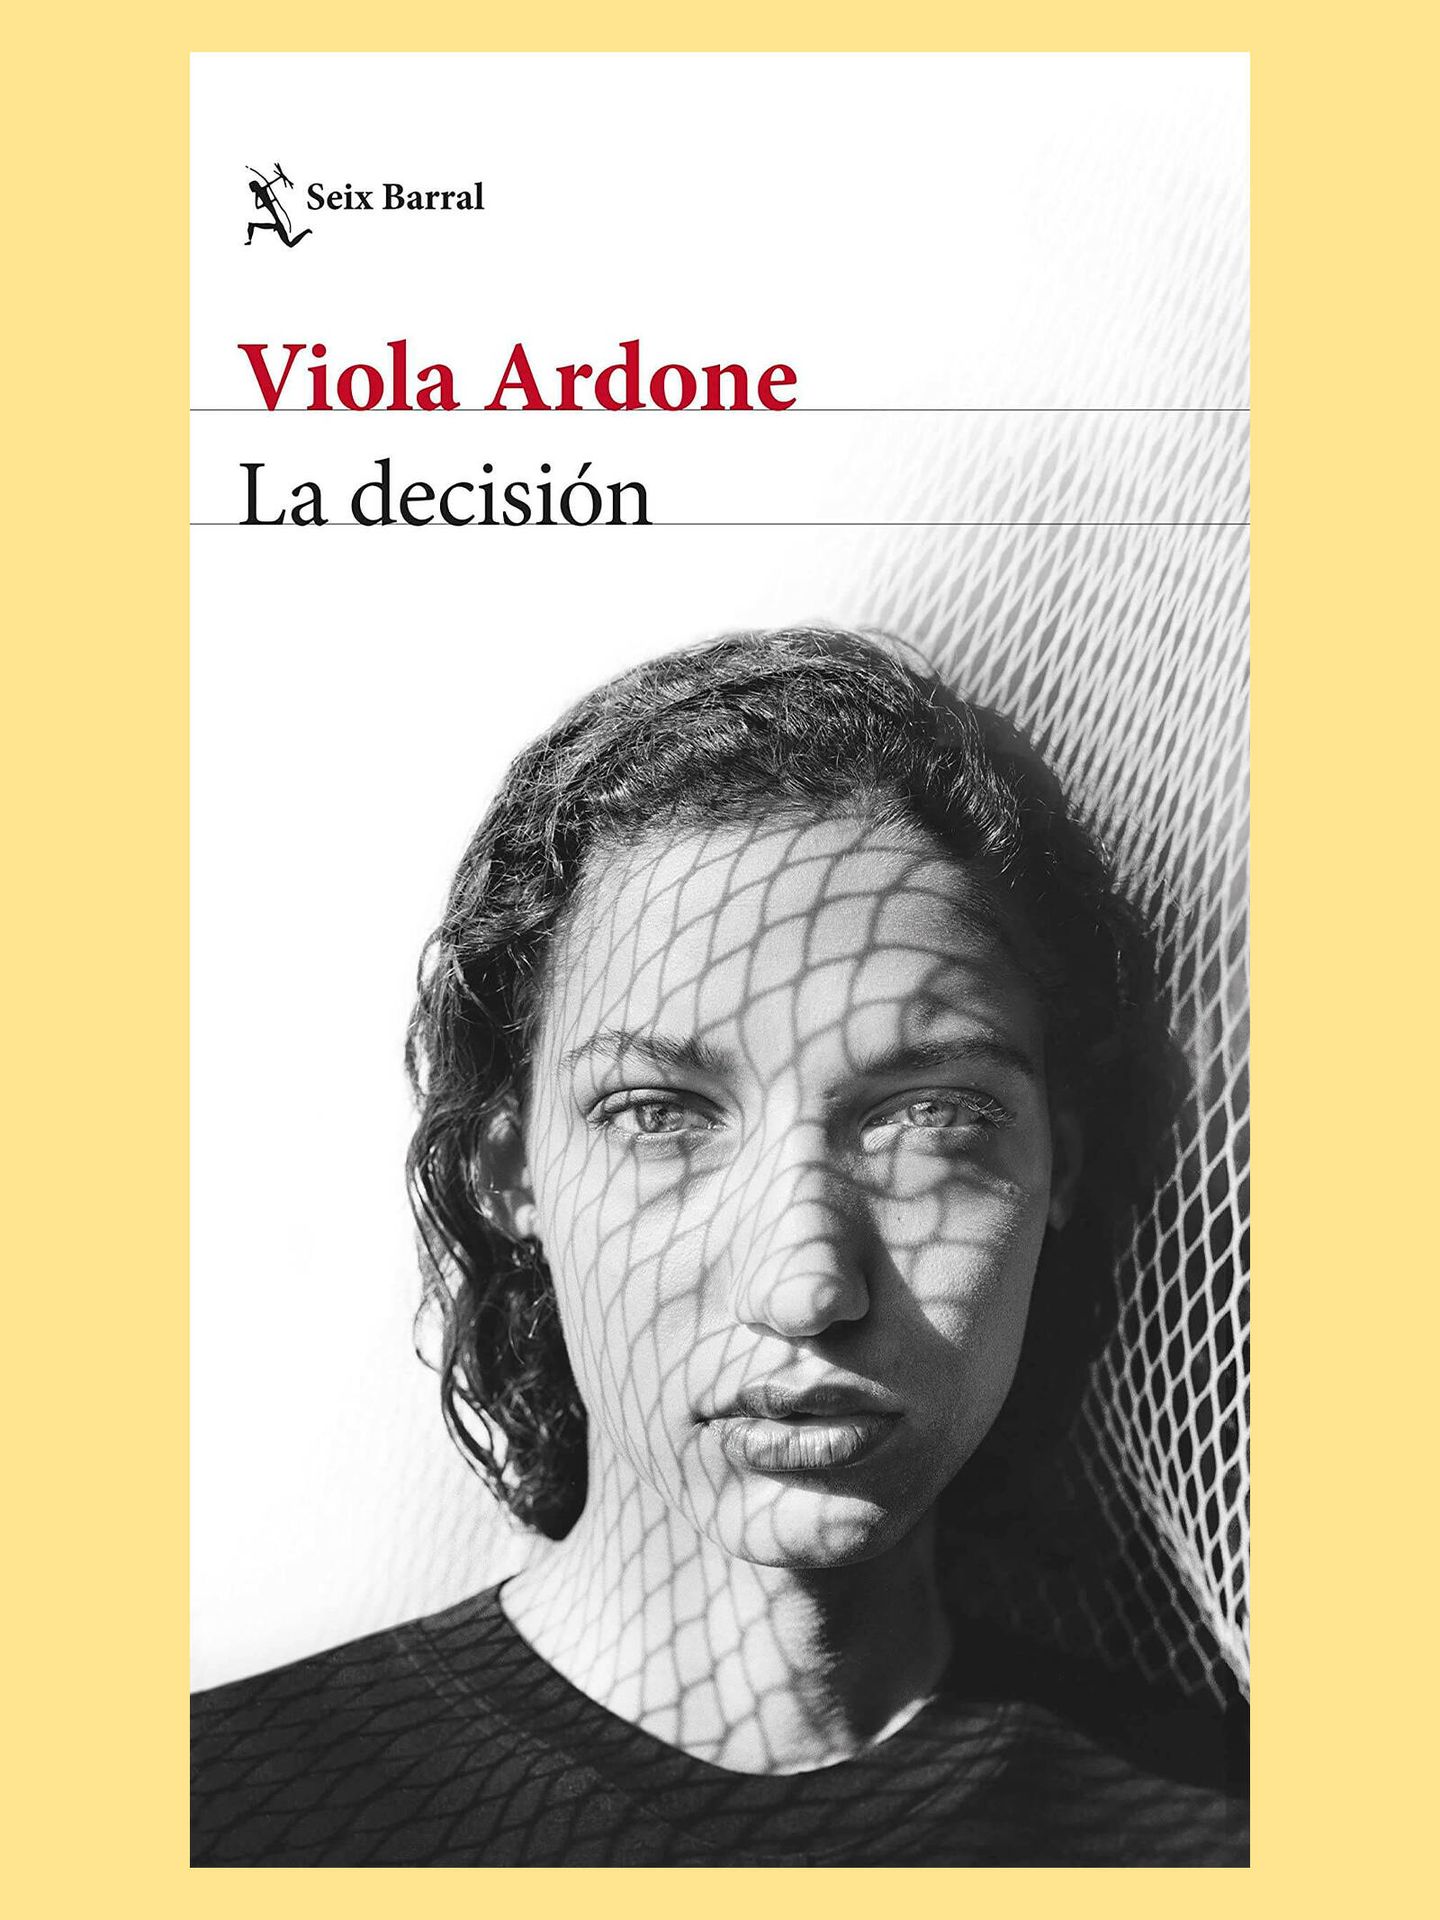 Portada de 'La decisión', el libro de Viola Ardone que novela el caso de una joven siciliana que se niega a un matrimonio reparador.